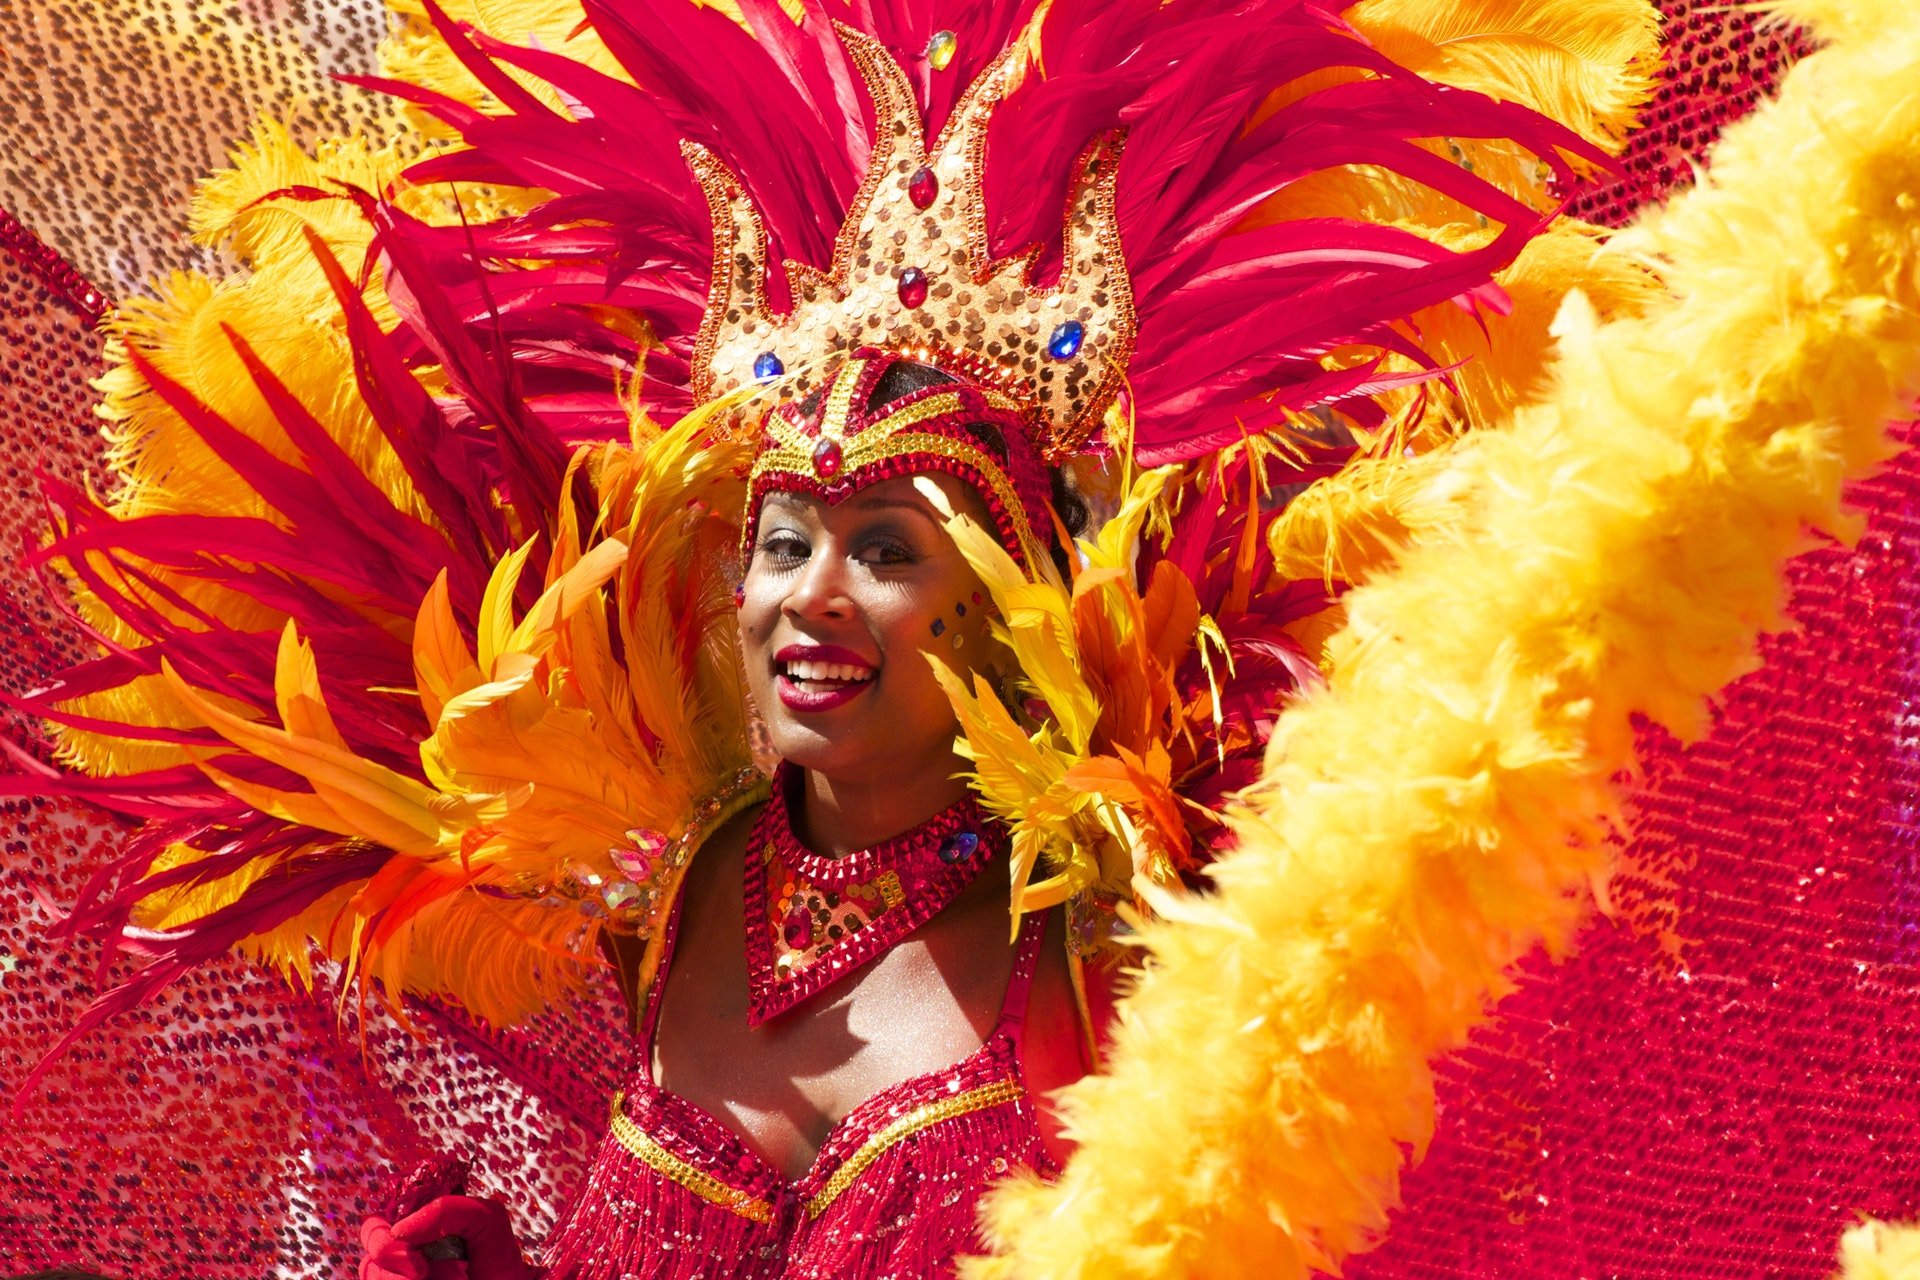 Mulher dançando no carnaval com fantasia típica.